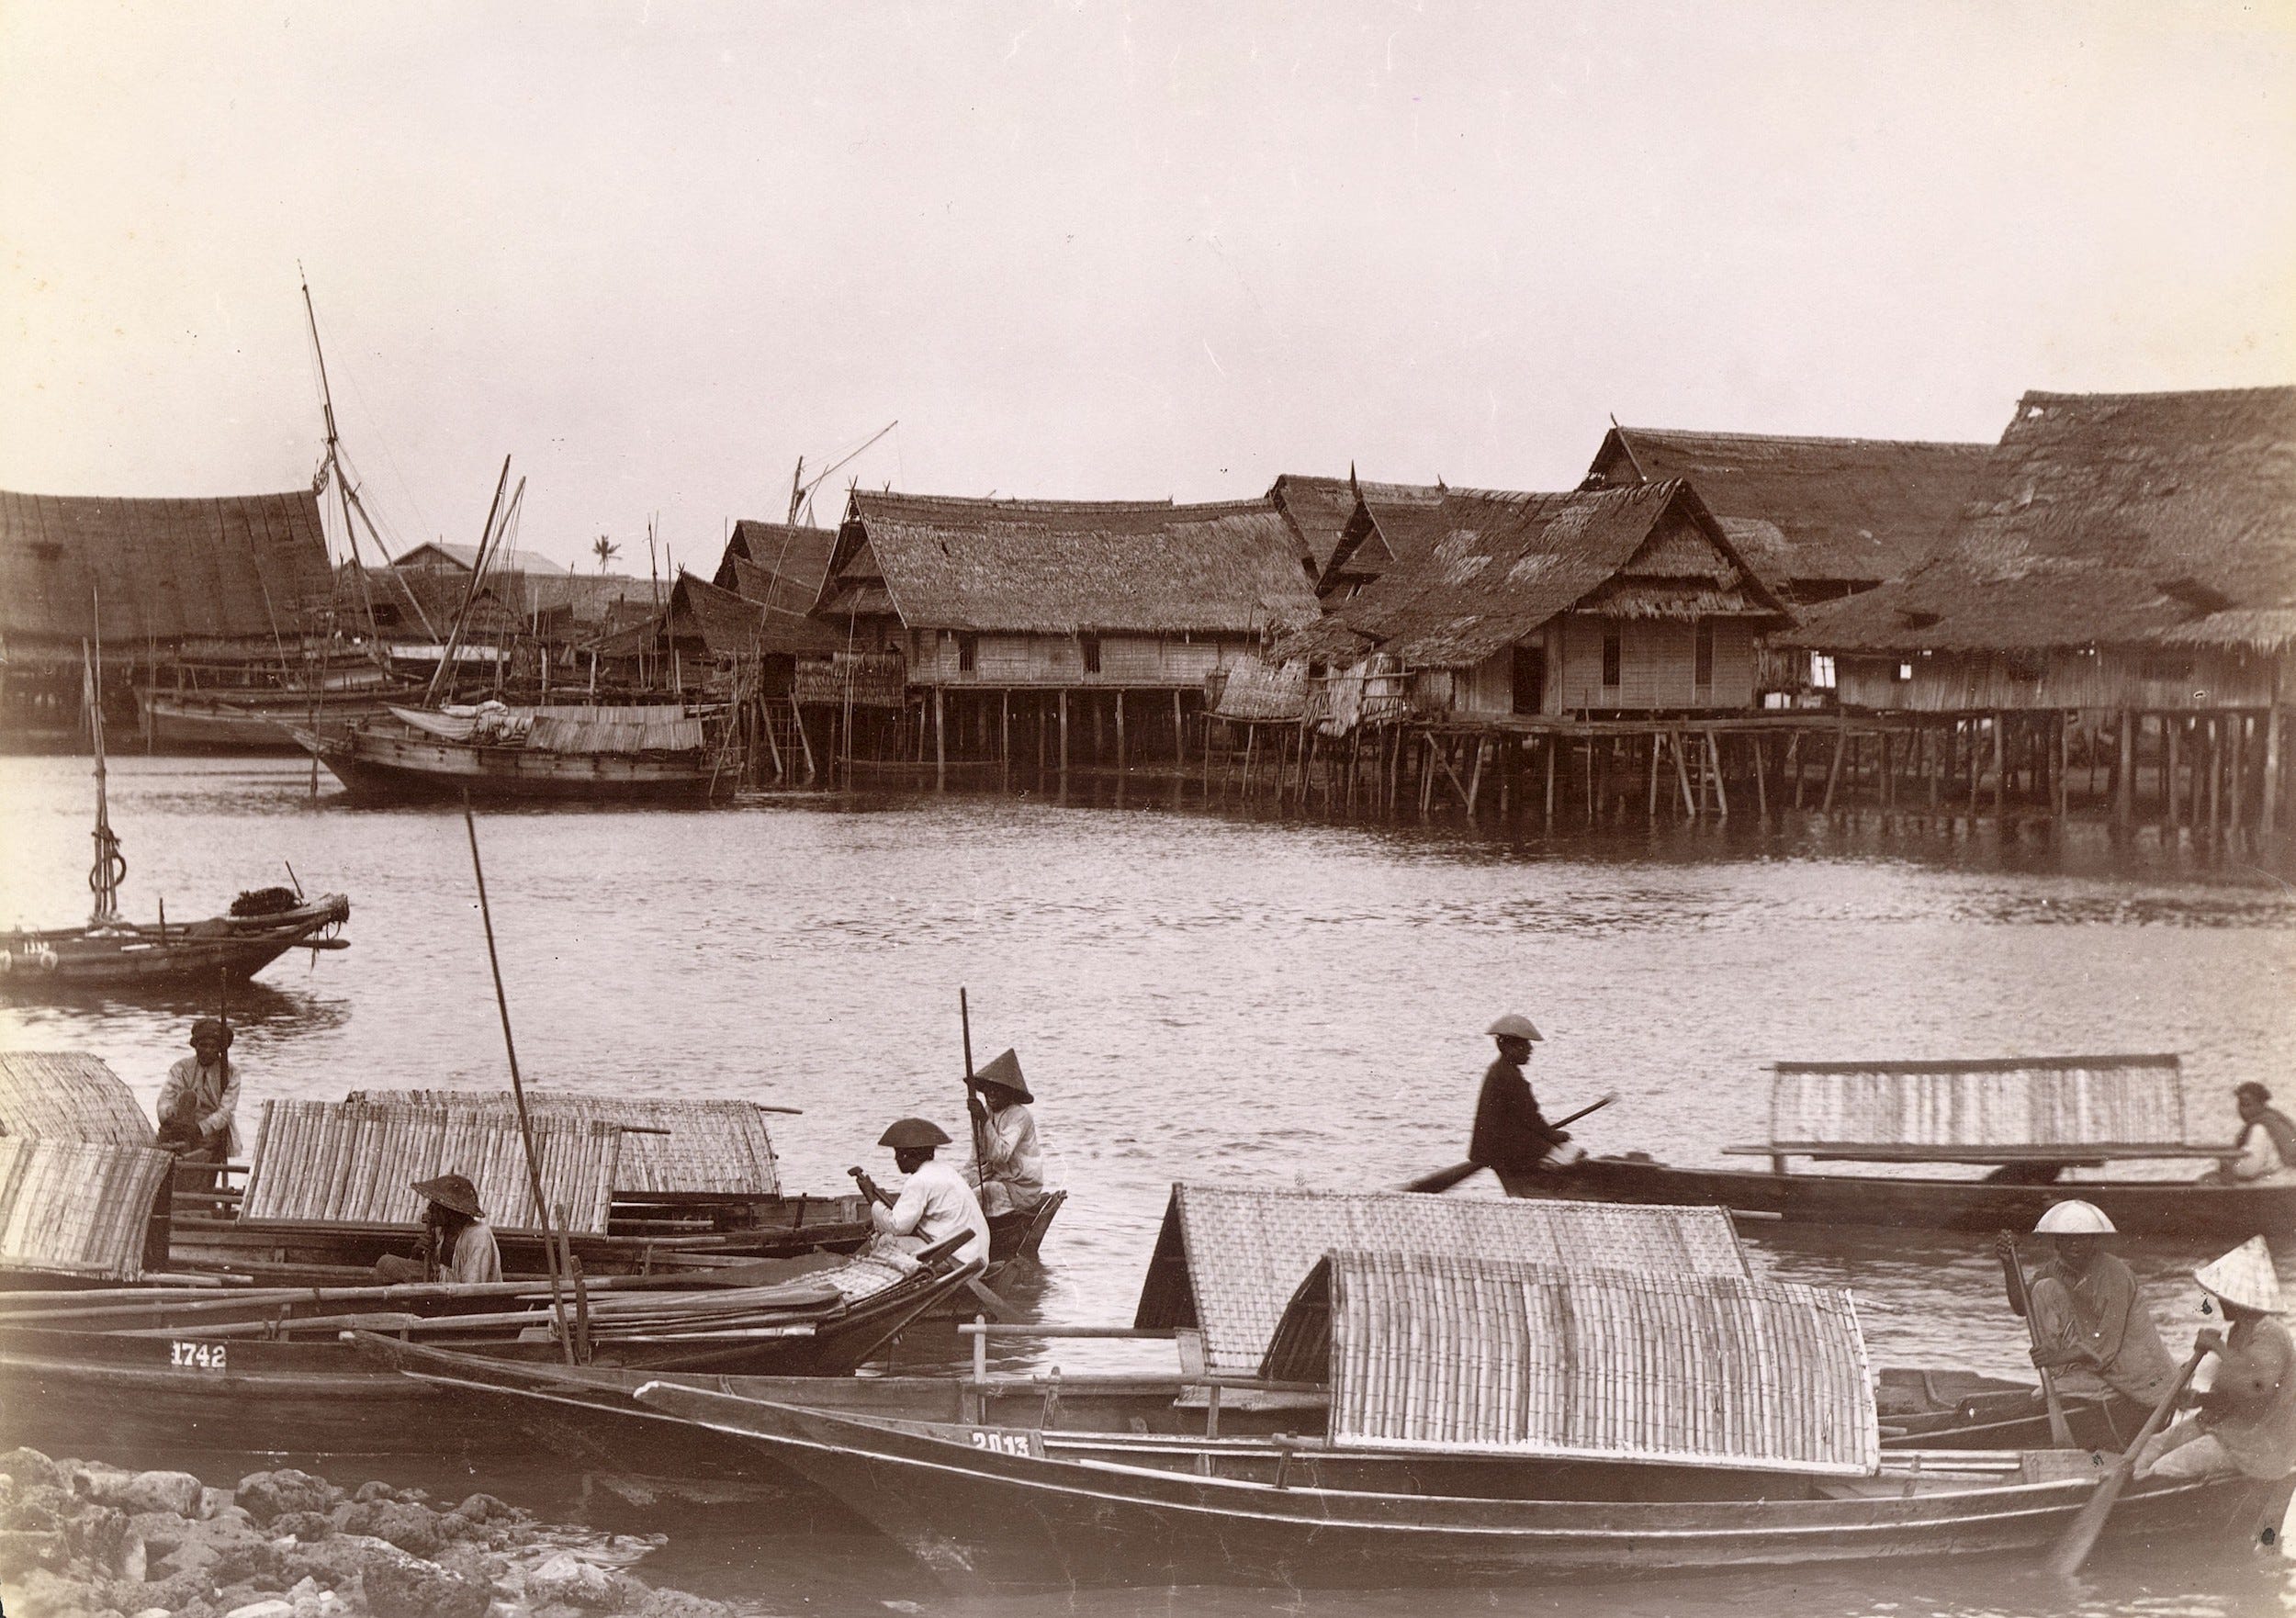 Ein Vintage-Foto von Sampan-Booten, die in der Nähe von Häusern auf Stelzen auf dem Wasser schwimmen.